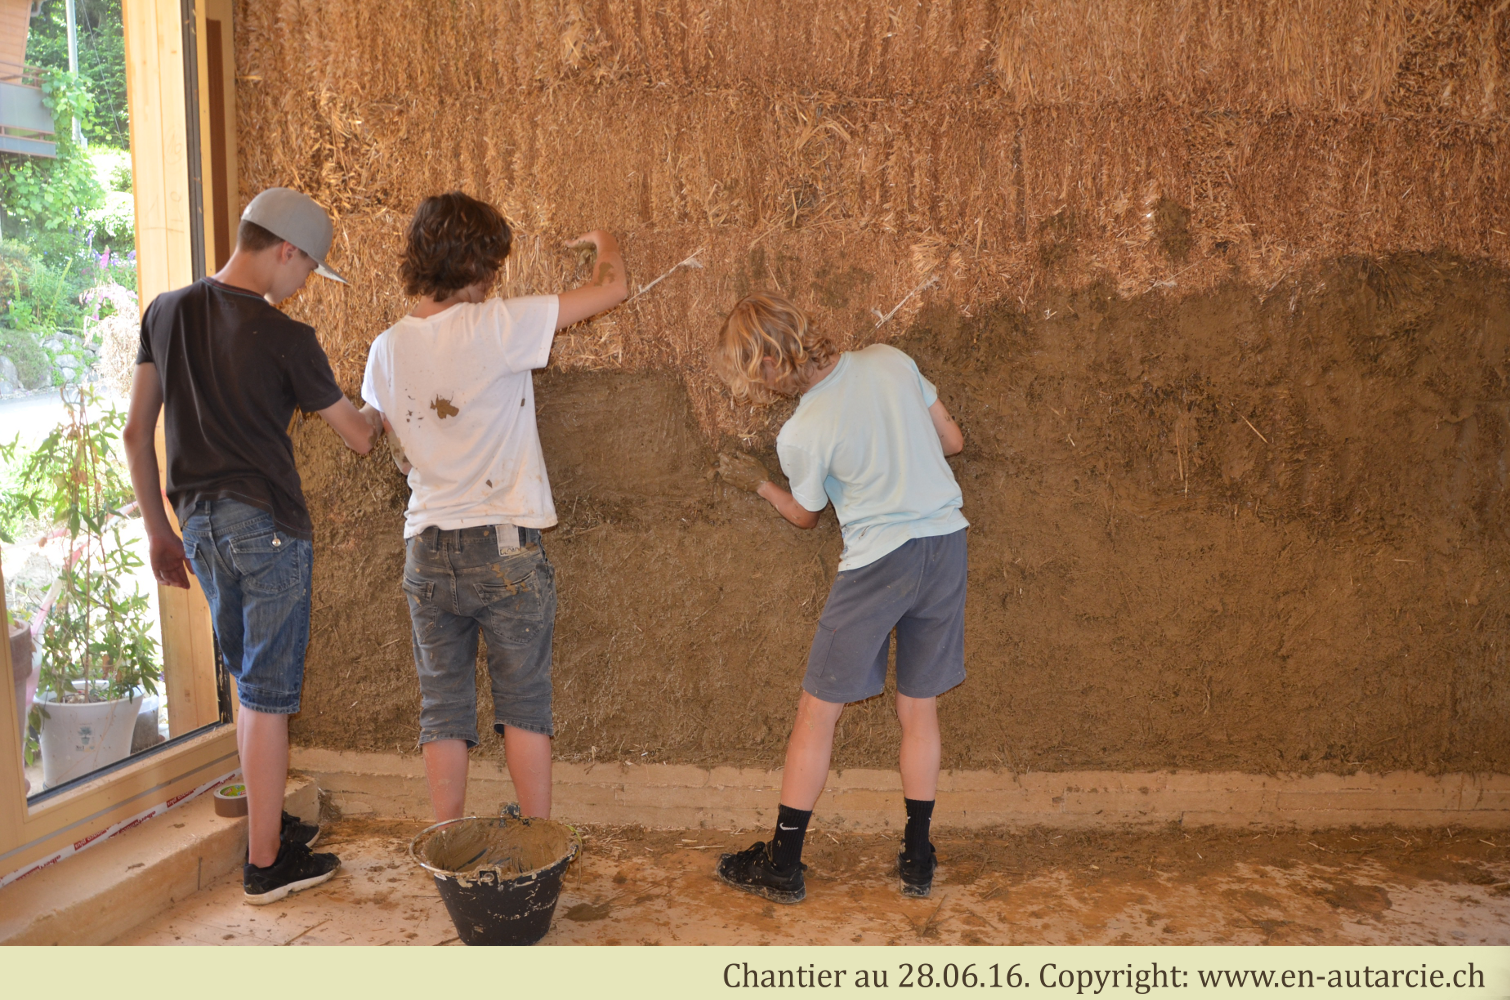 28.06.16 - 40 élèves de 9ème année viennent découvrir les crépis en terre (photo prise juste avant que la bataille de boue ne commence...)